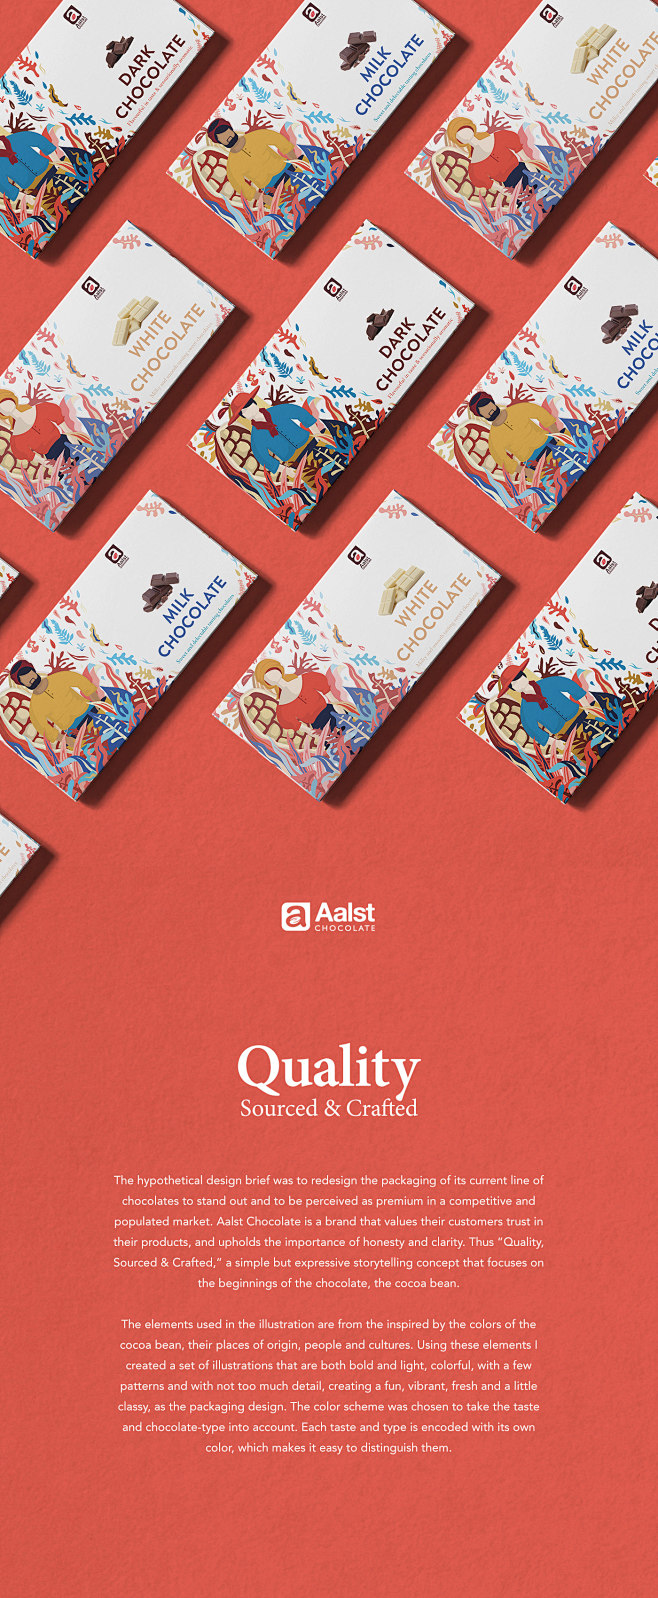 Aalst Chocolate: Qua...